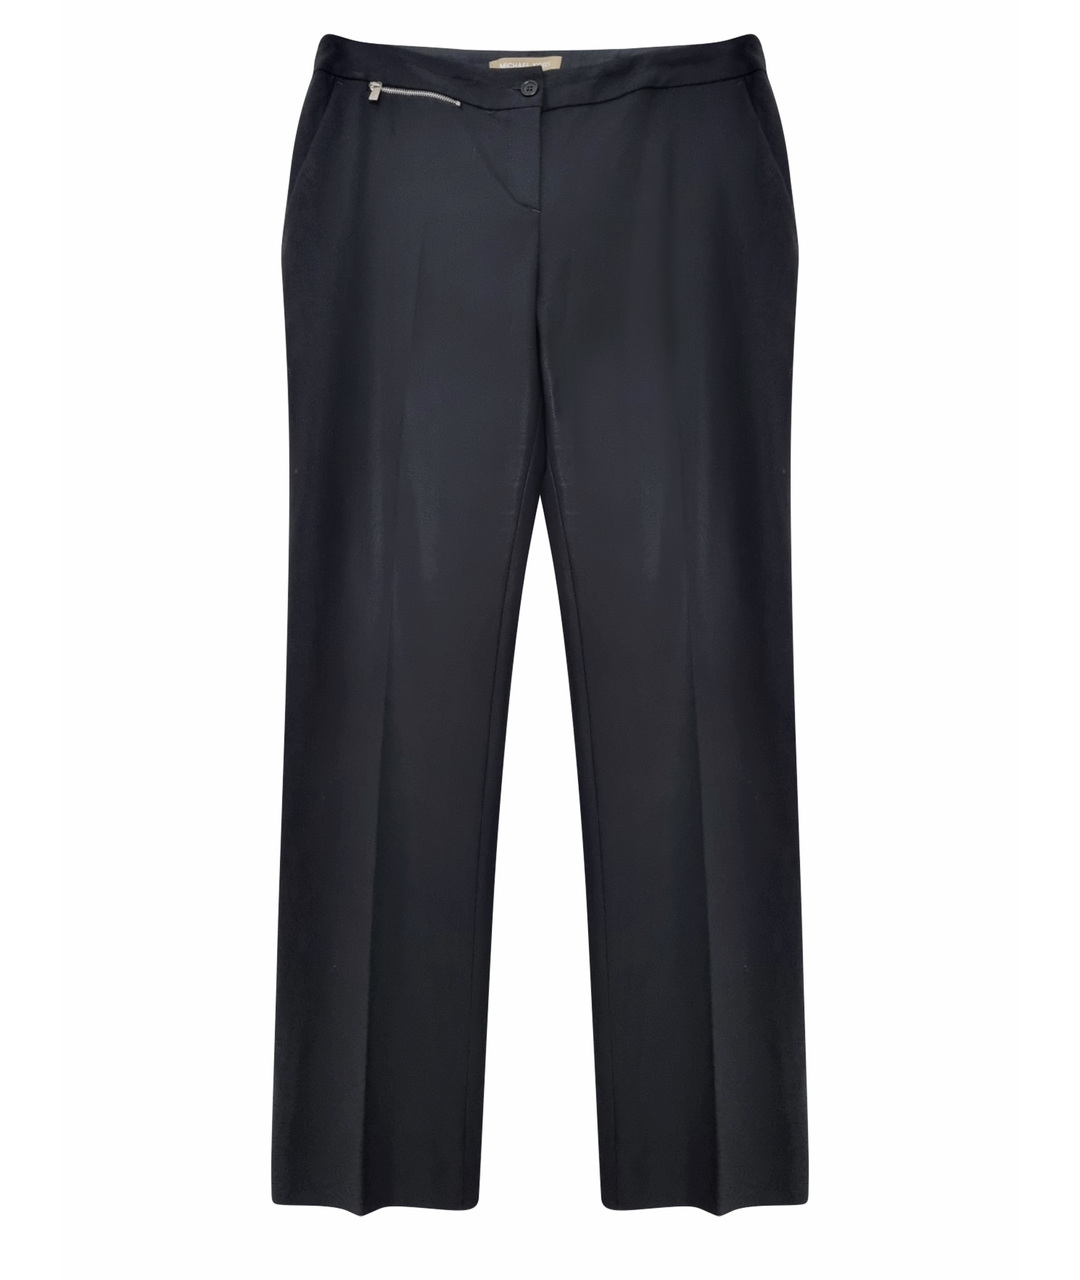 MICHAEL KORS Черные шерстяные прямые брюки, фото 1